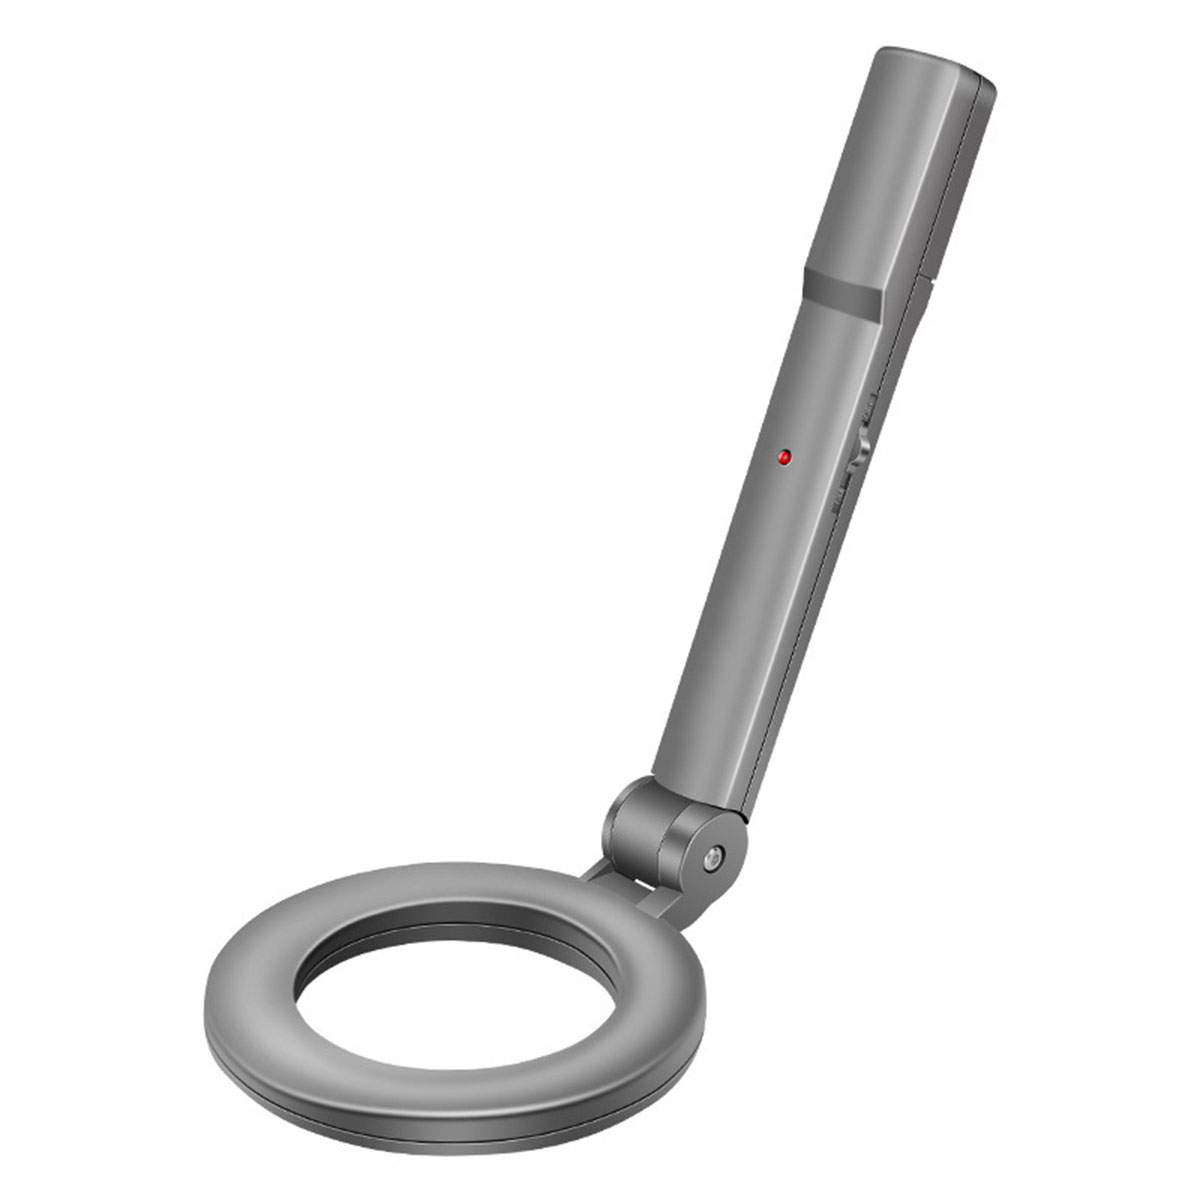 BYTELIKE Metalldetektor Handheld hochempfindliche Sicherheit Checker Exploration Outdoor Metalldetektor, Silber